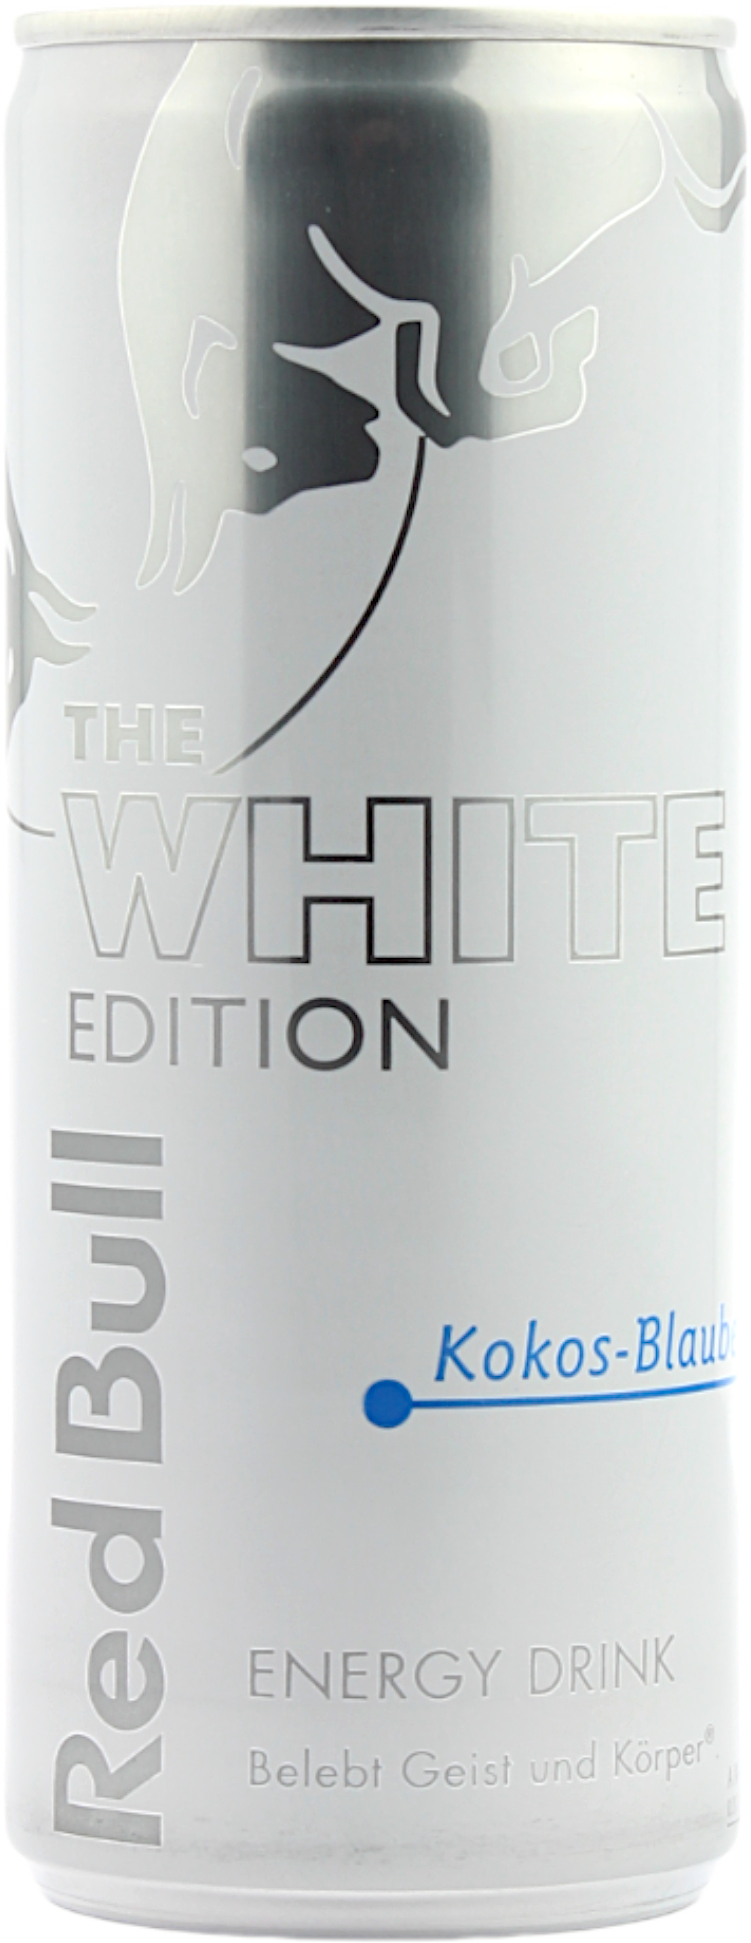 Red Bull White Edition Kokos - Blaubeere 0,25 l Dose (Einweg)